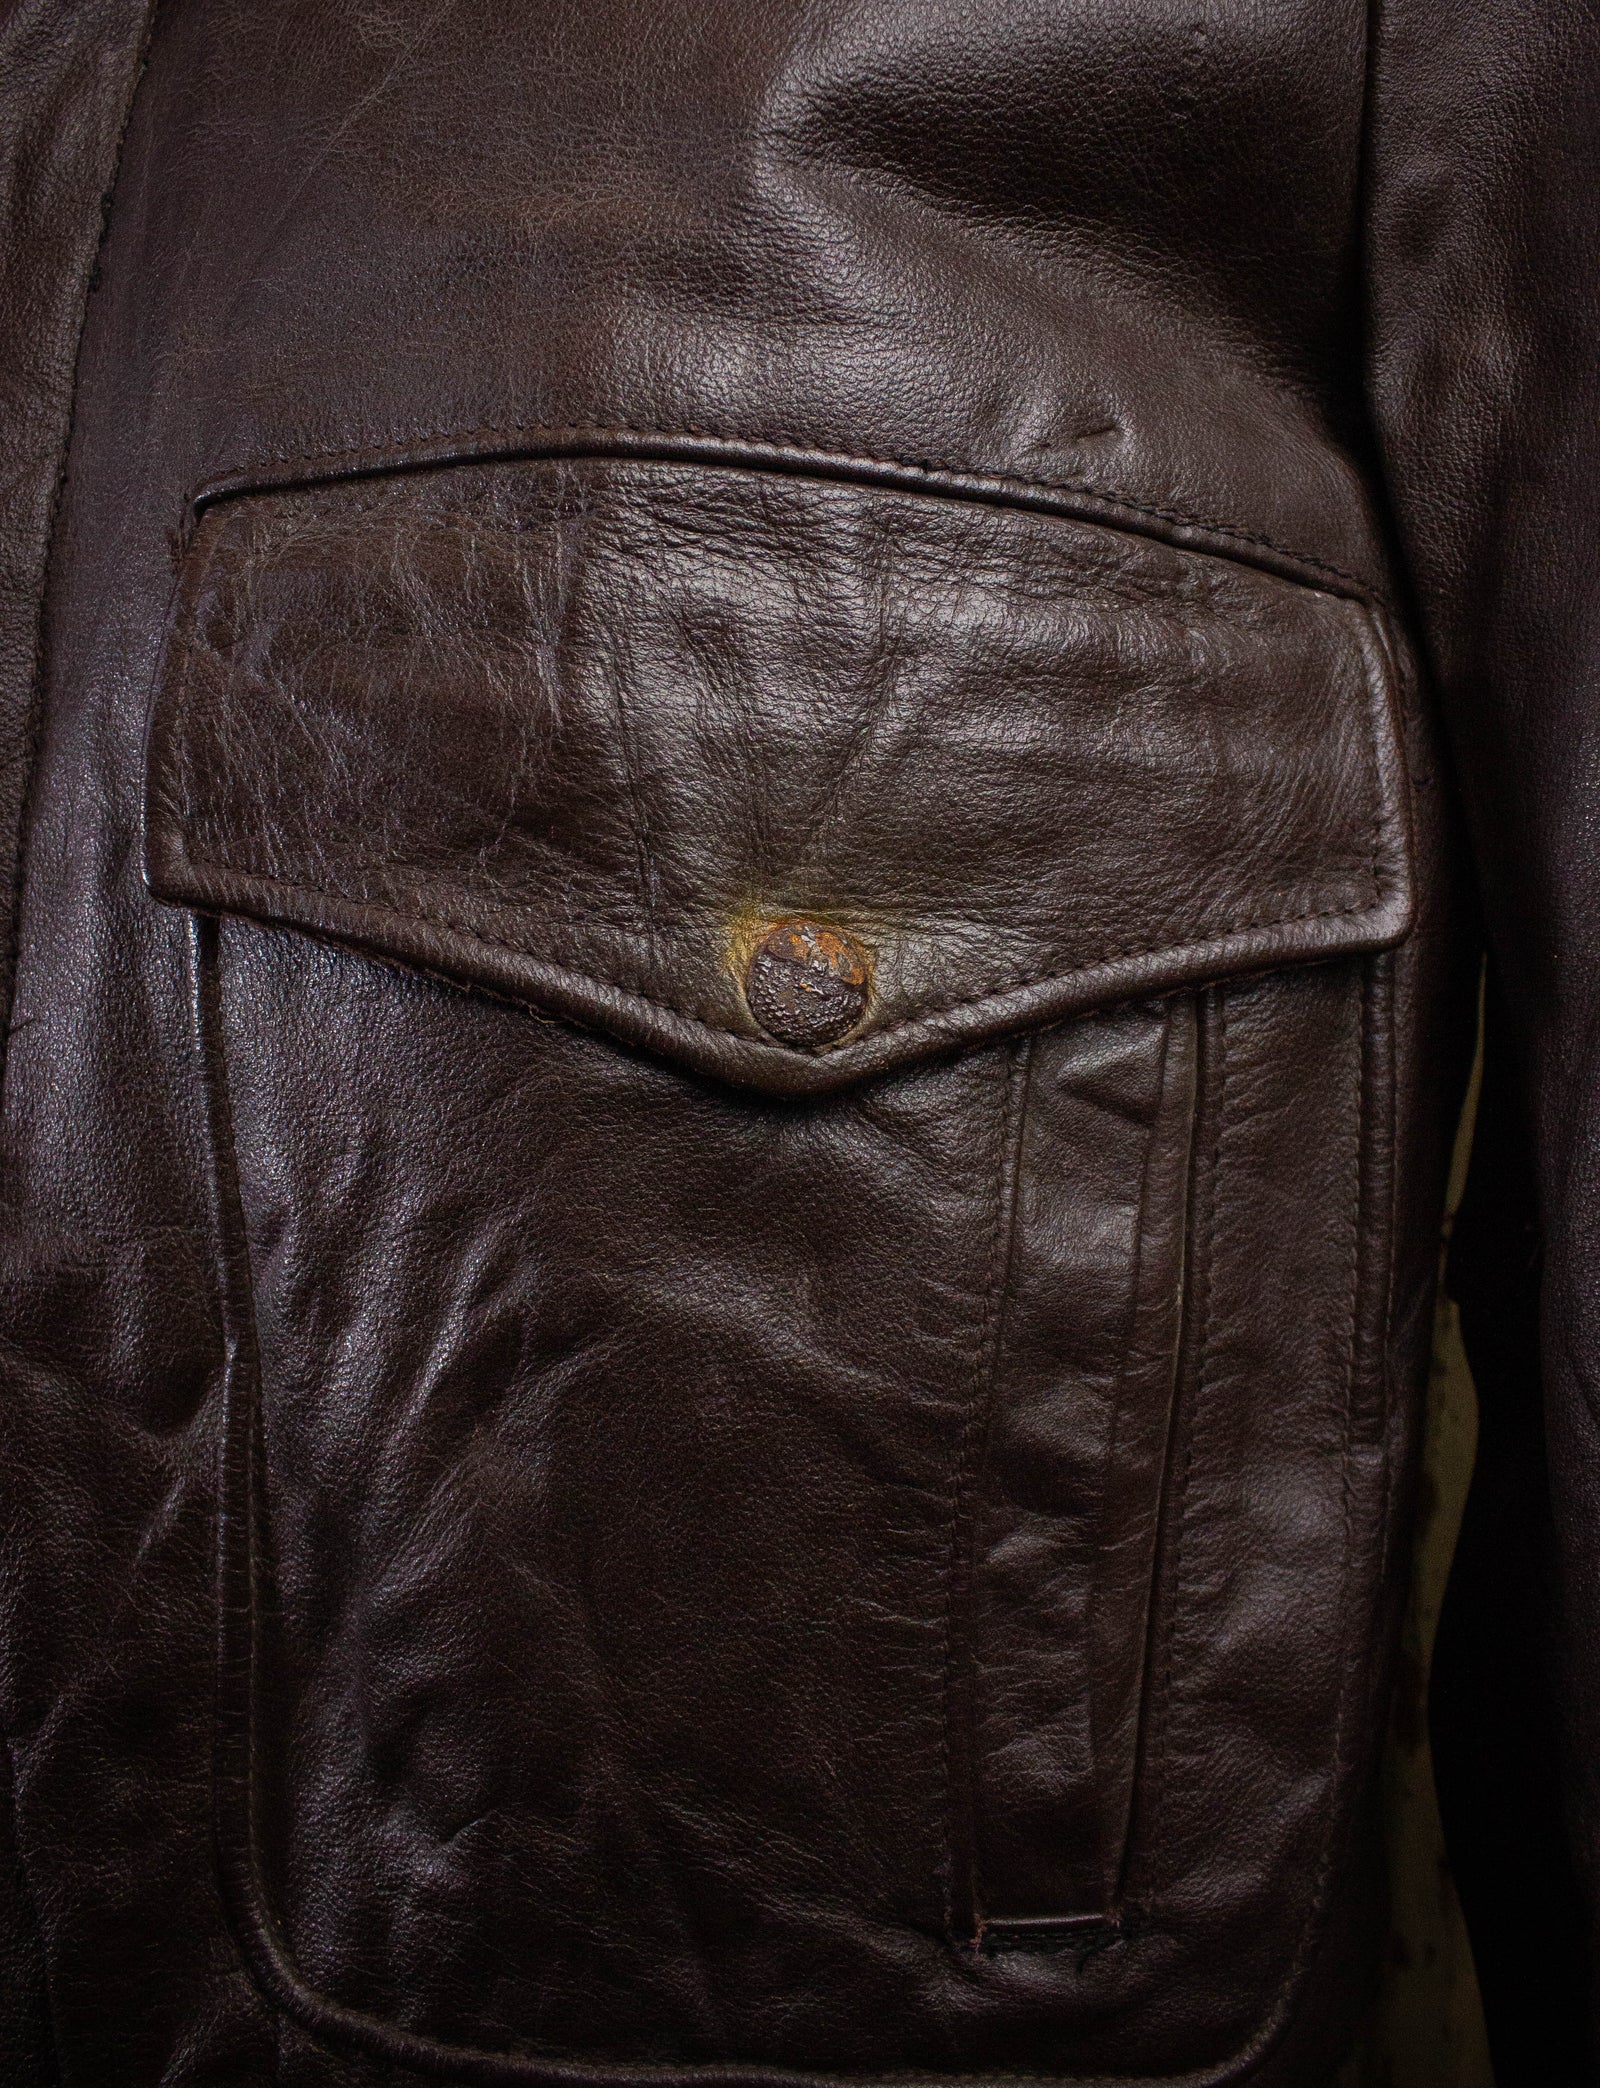 Vintage Excelled Leather Bomber Jacket 70s Brown Size 42 Black Shag Vintage 